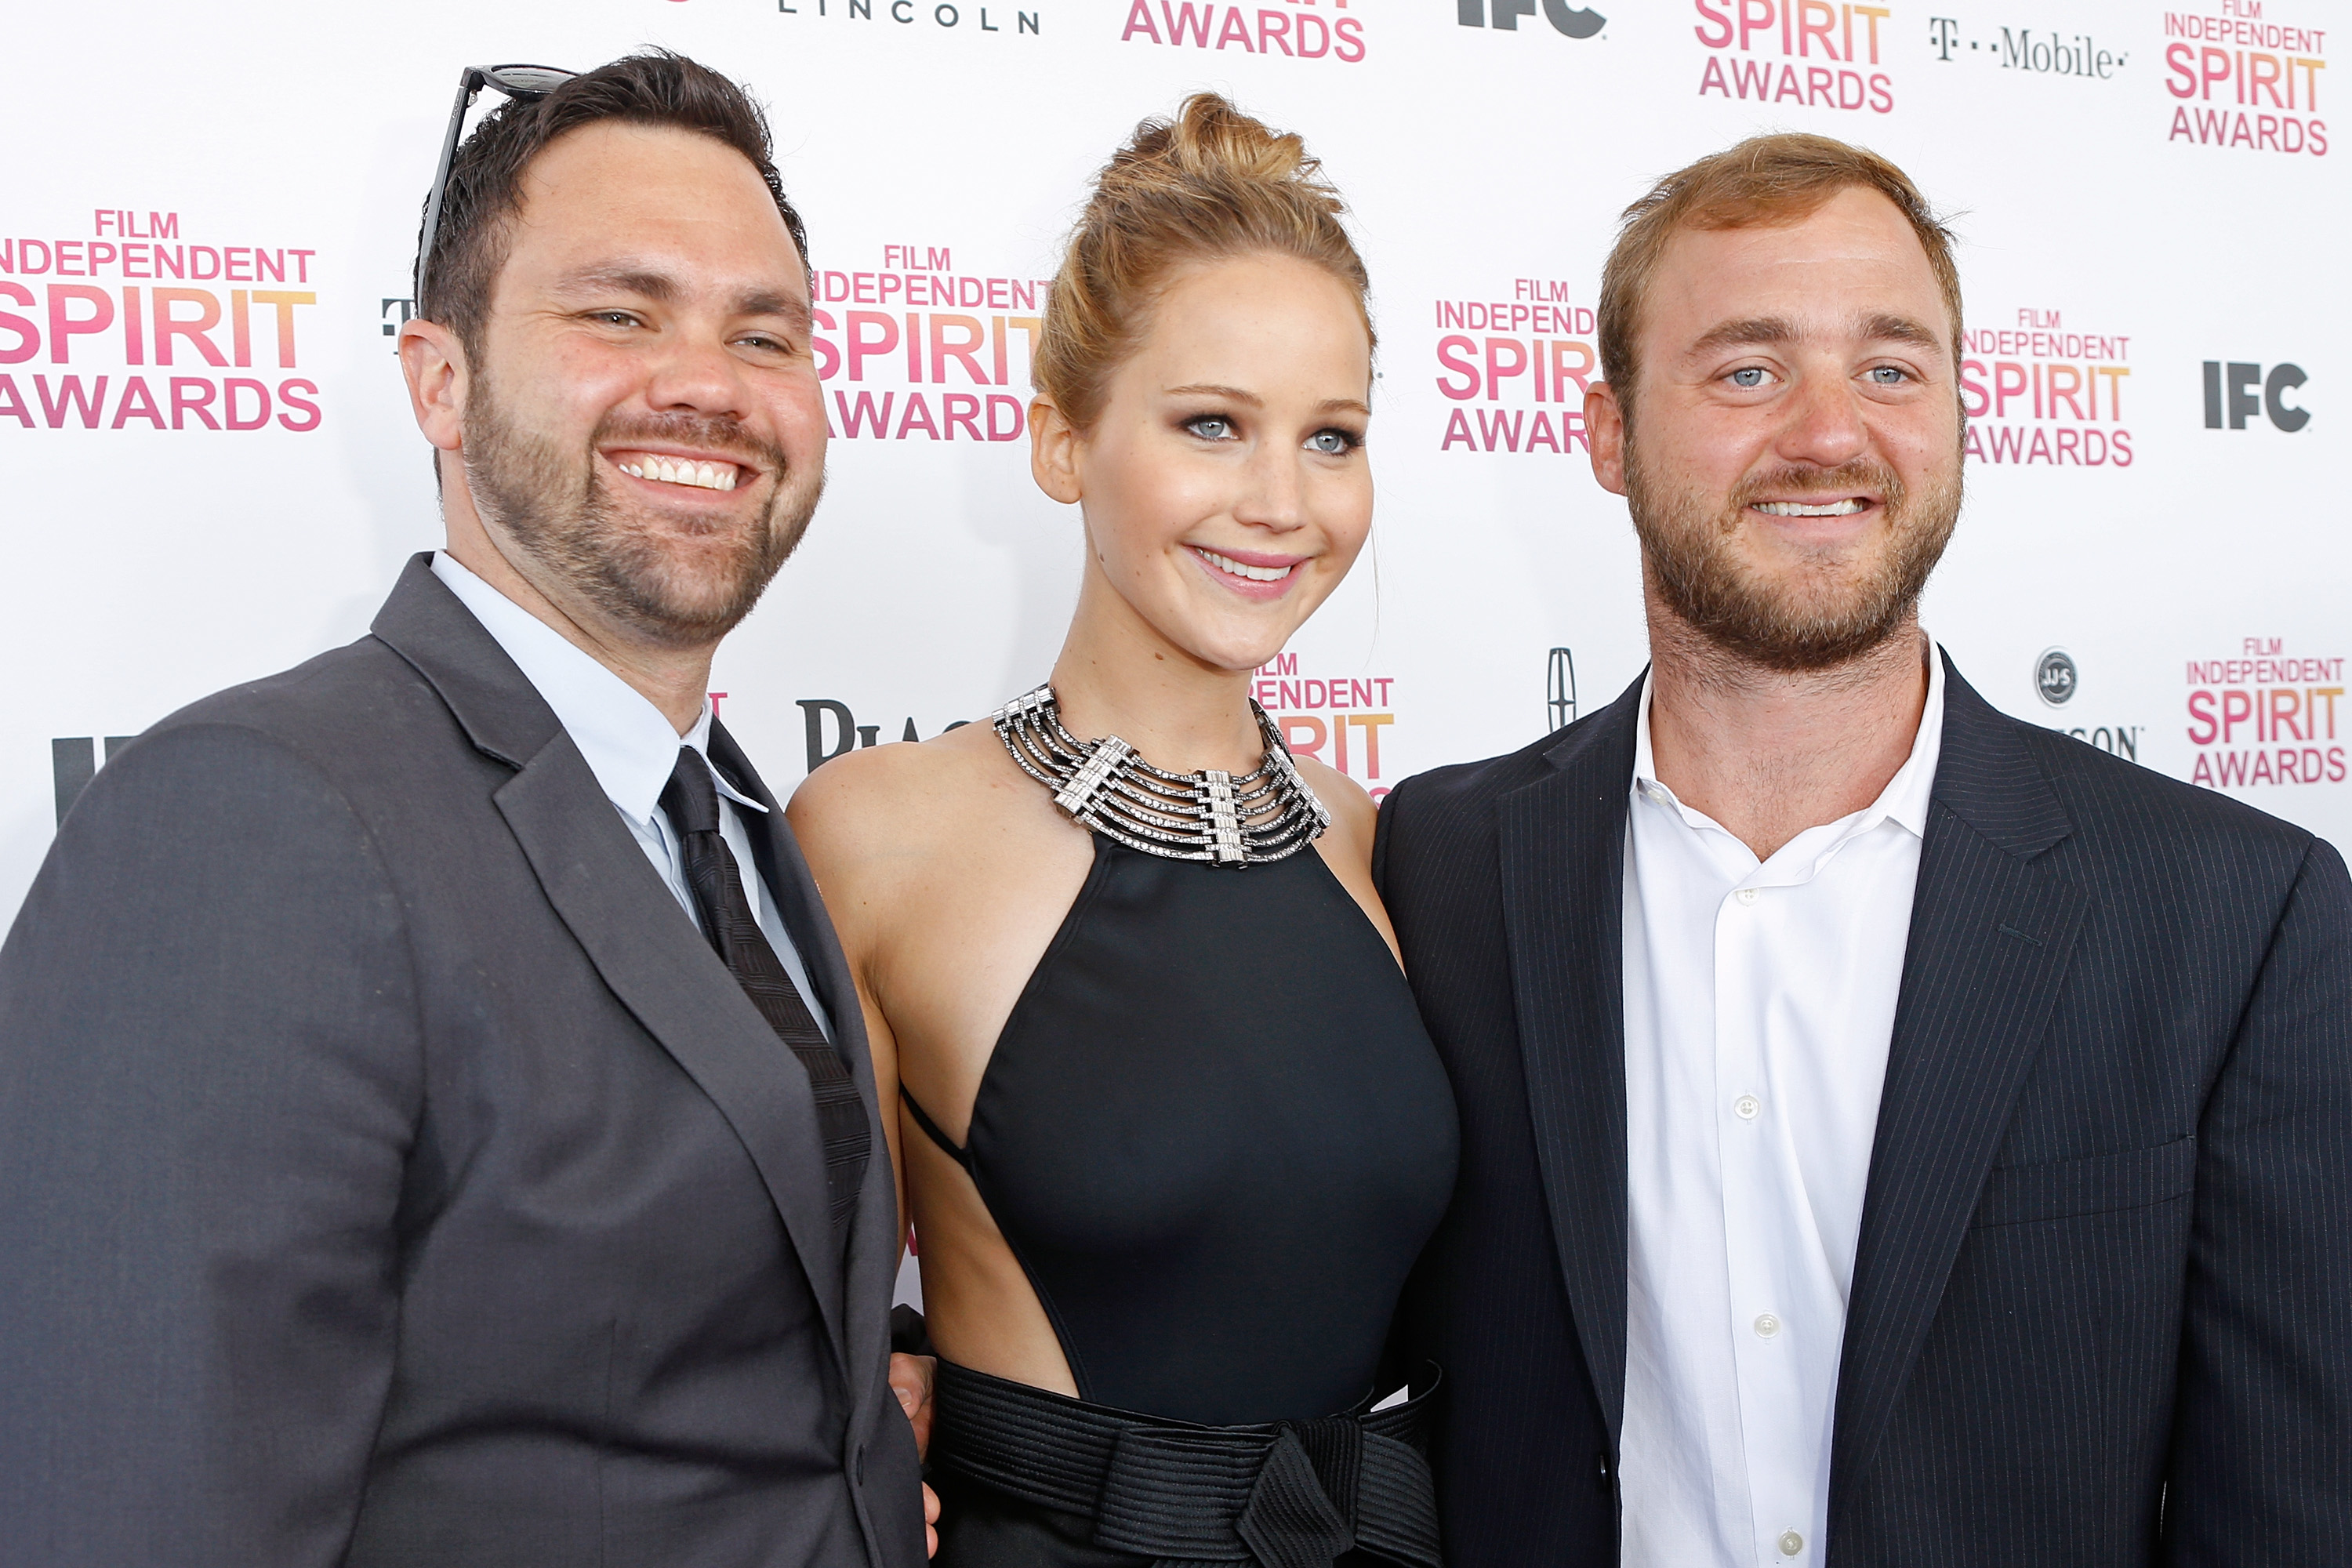 Jennifer Lawrence und ihre Brüder bei den Film Independent Spirit Awards 2013 in Santa Monica, Kalifornien. | Quelle: Getty Images